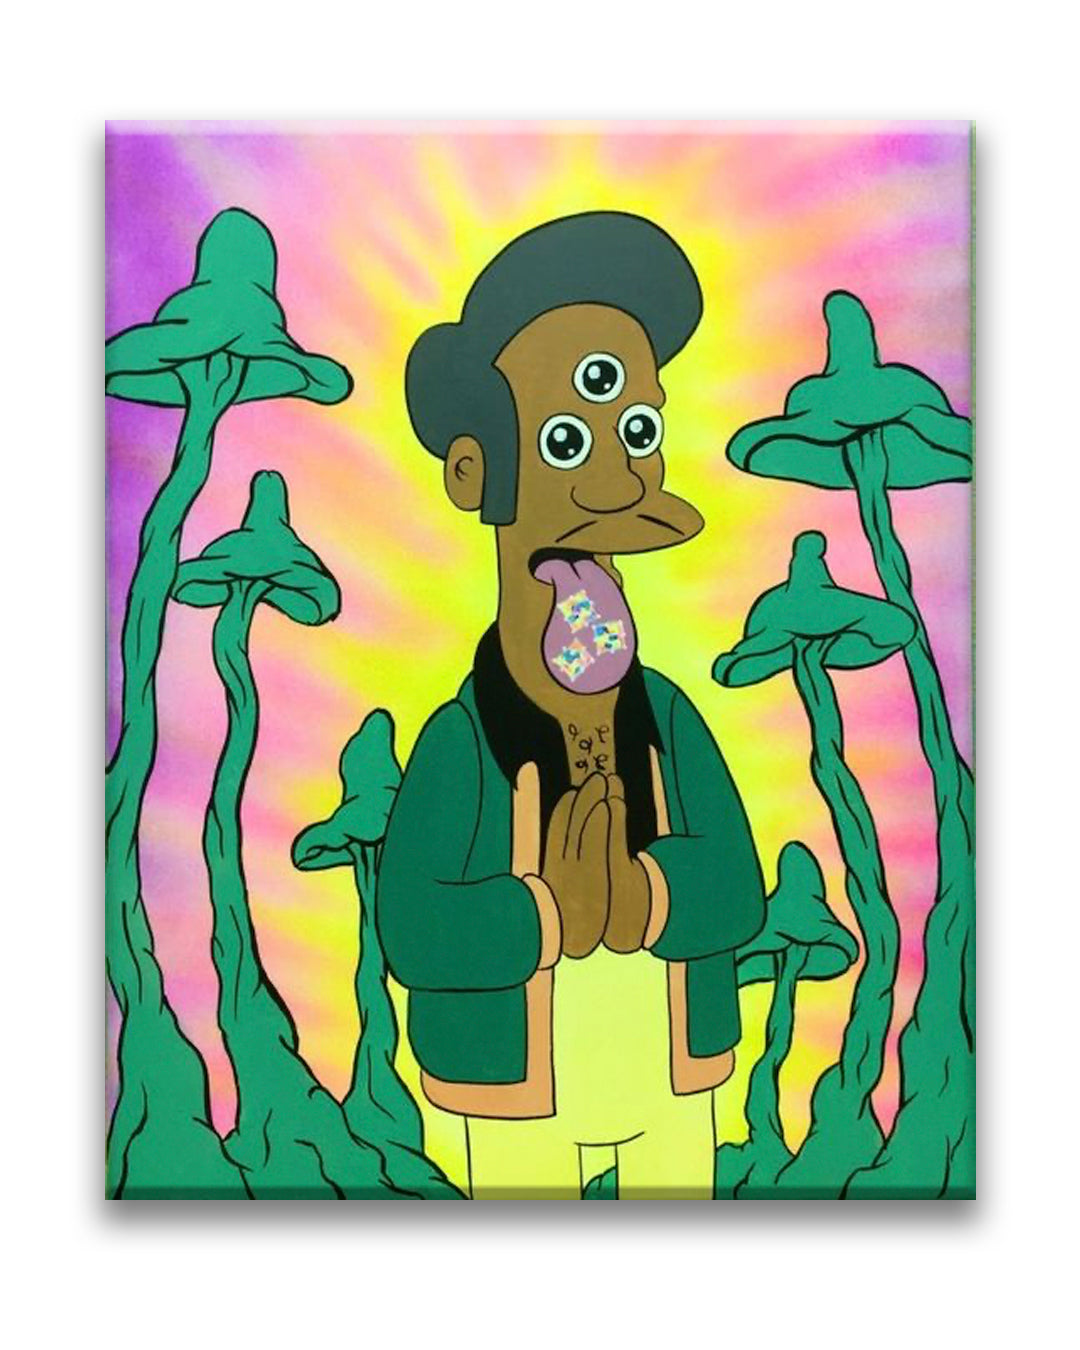 HeadyPaints - Mushroom Apu